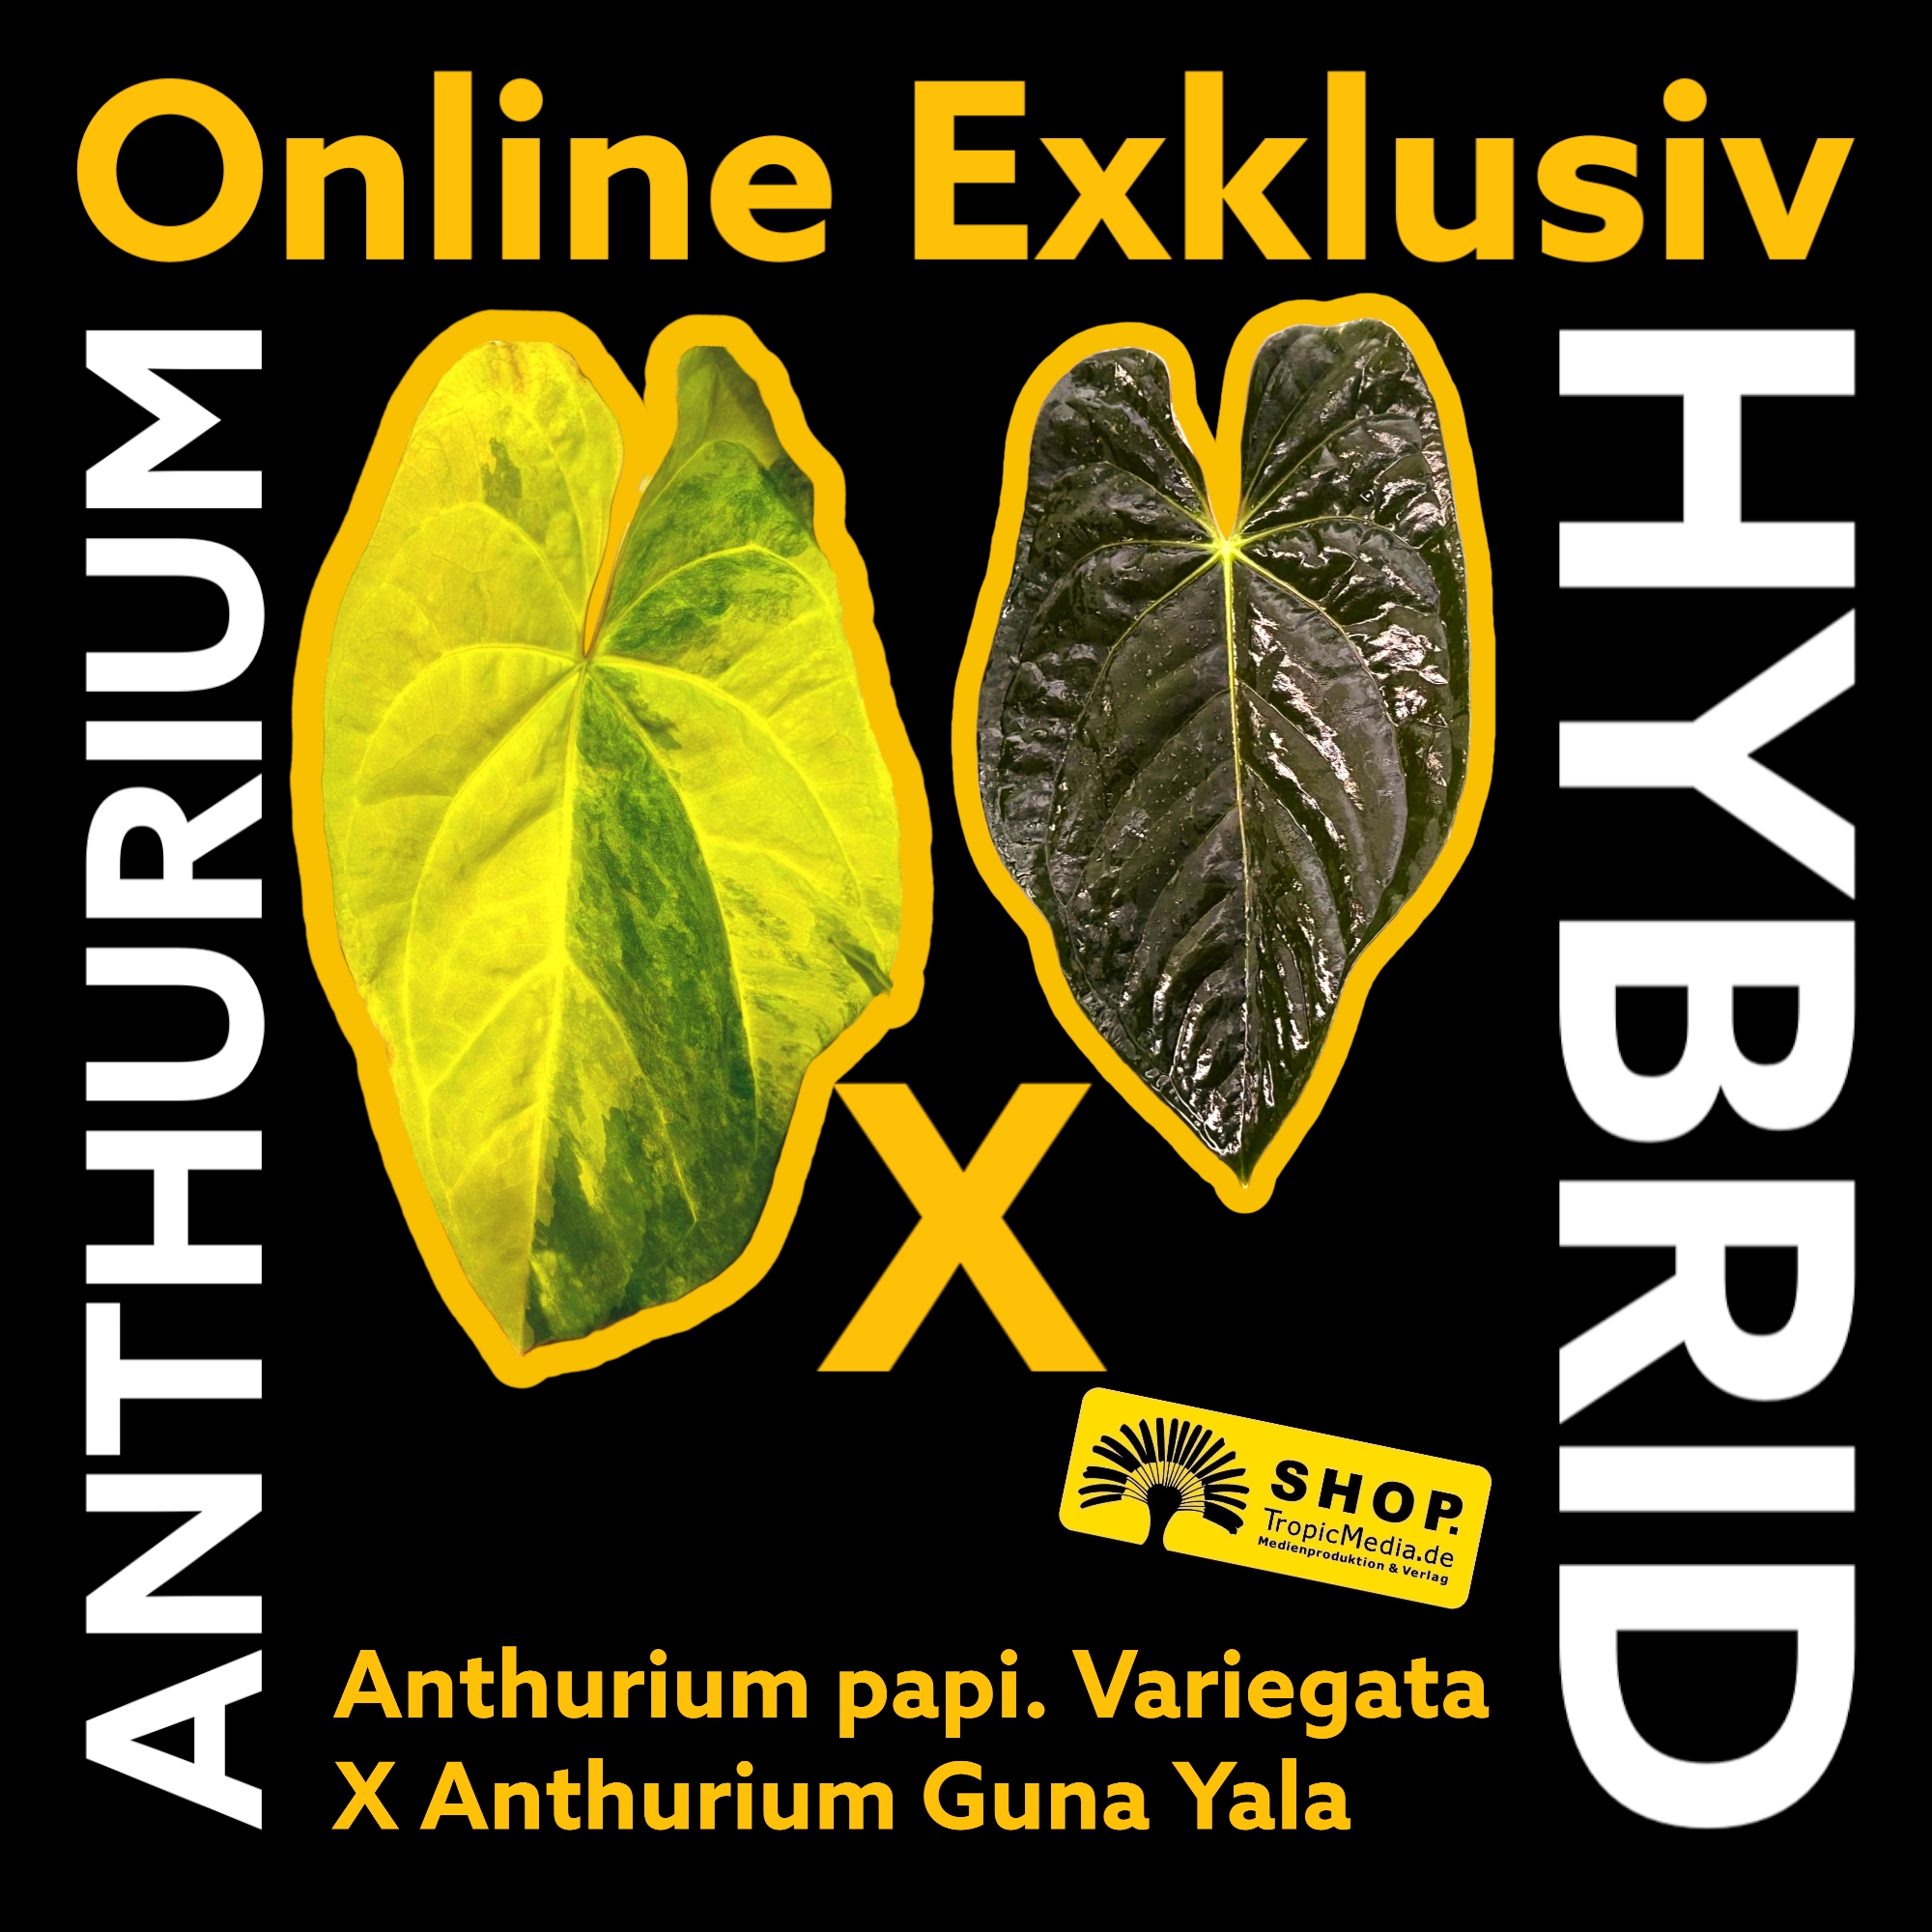 Anthurium papillilaminum Variegata X Anthurium Guna Yala EXQUISITE Kreuzung erstmals in Europa